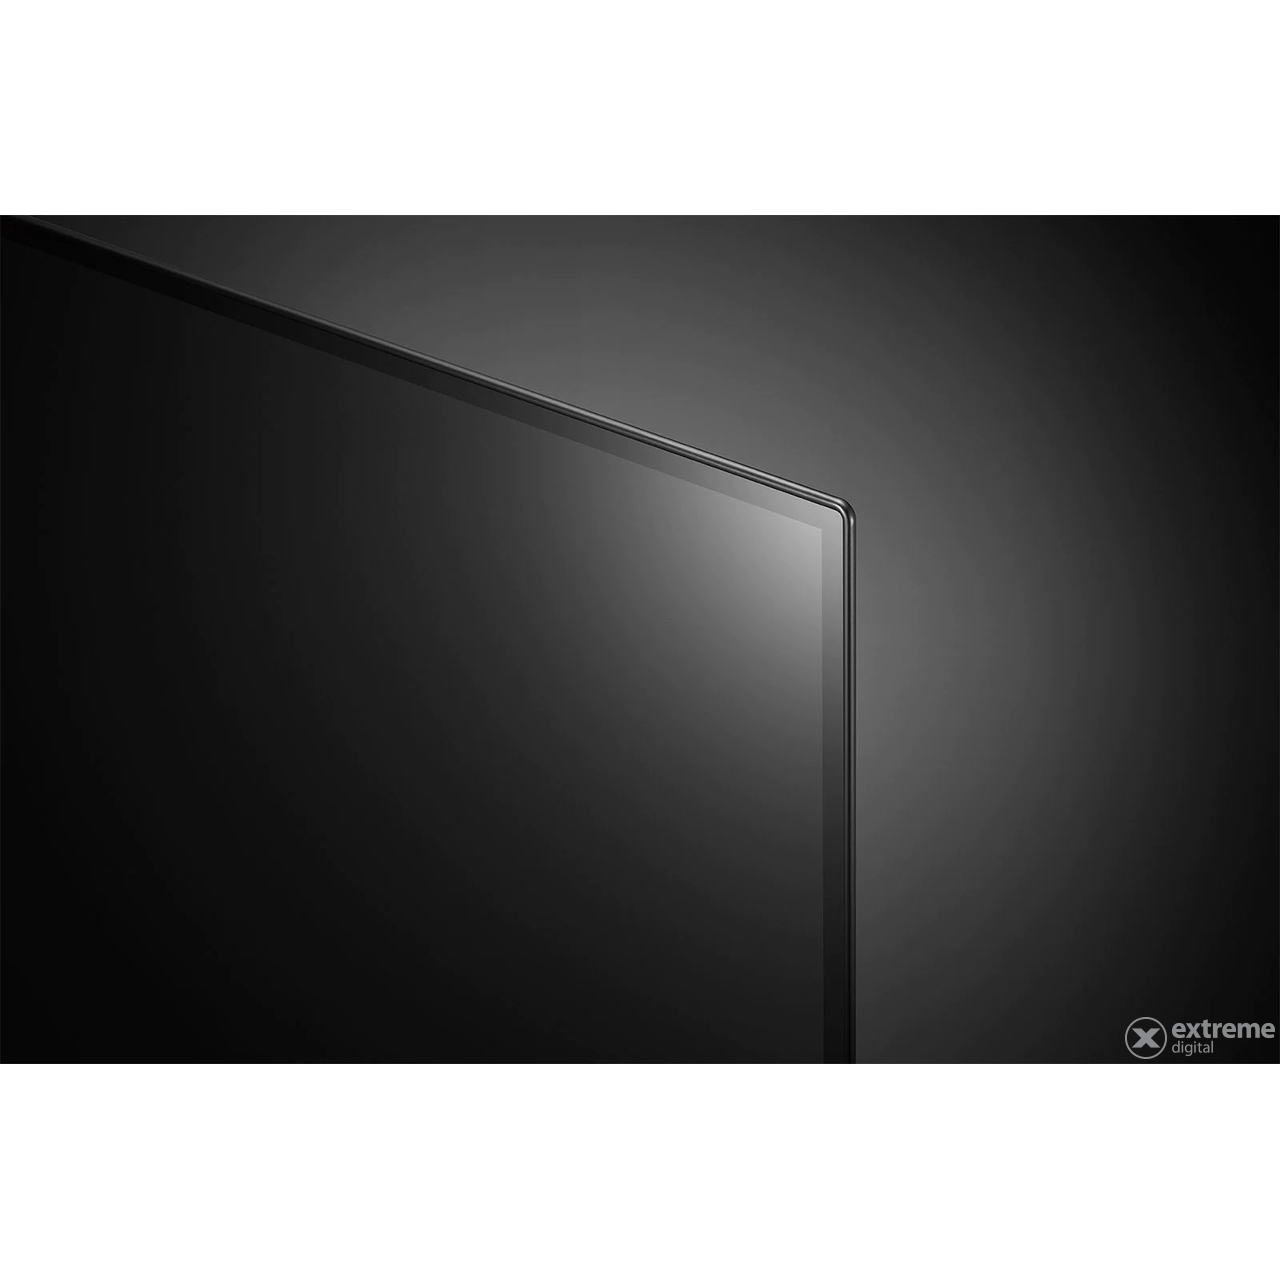 LG OLED48C21LA OLED 4K Ultra HD, HDR, webOS ThinQ AI EVO Smart TV, 121 cm